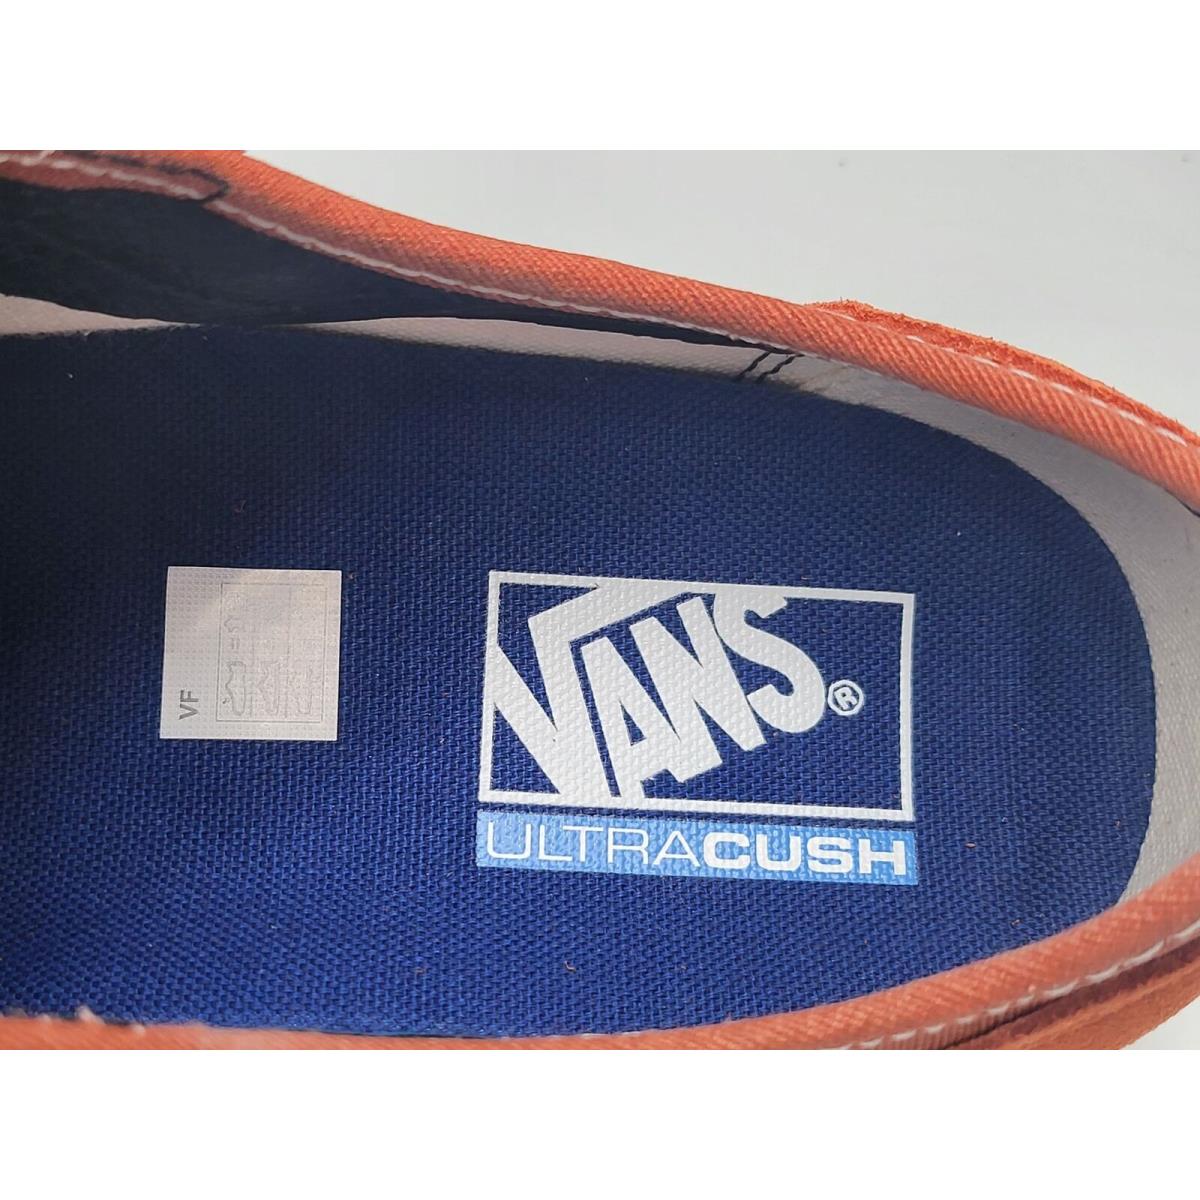 Vans shoes Style - Orange 5